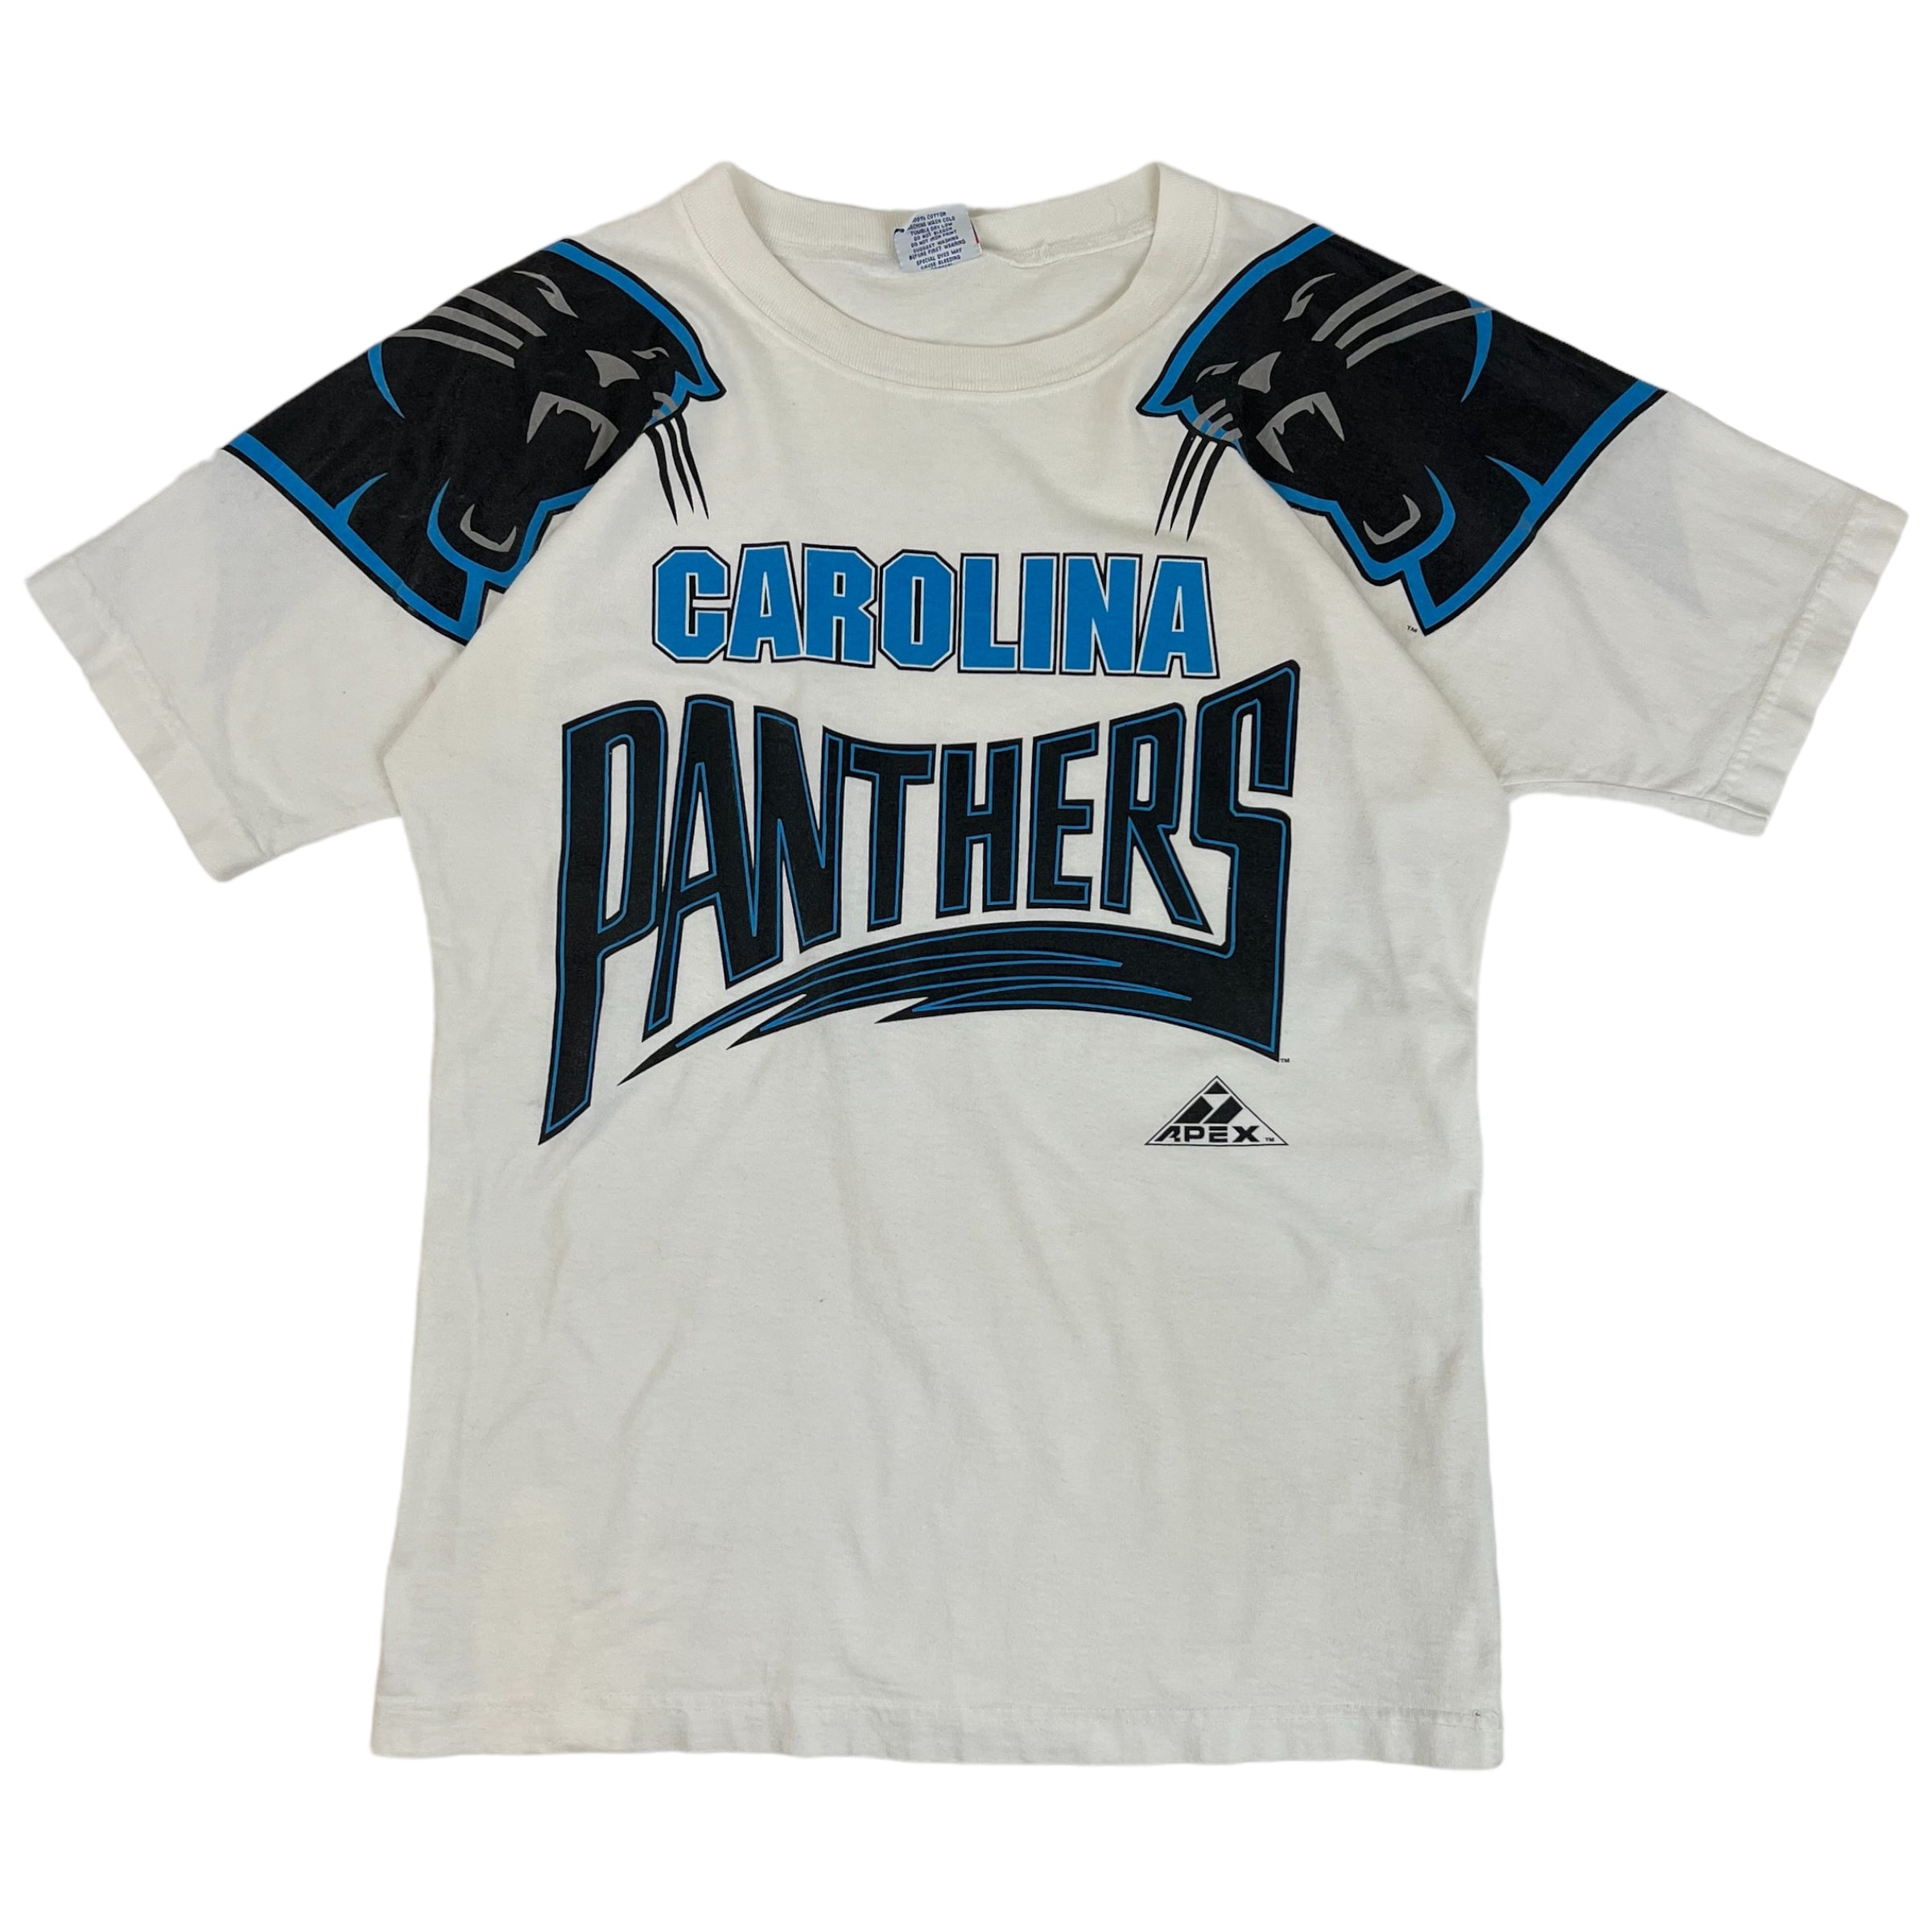 Vintage Carolina Panthers Tee White